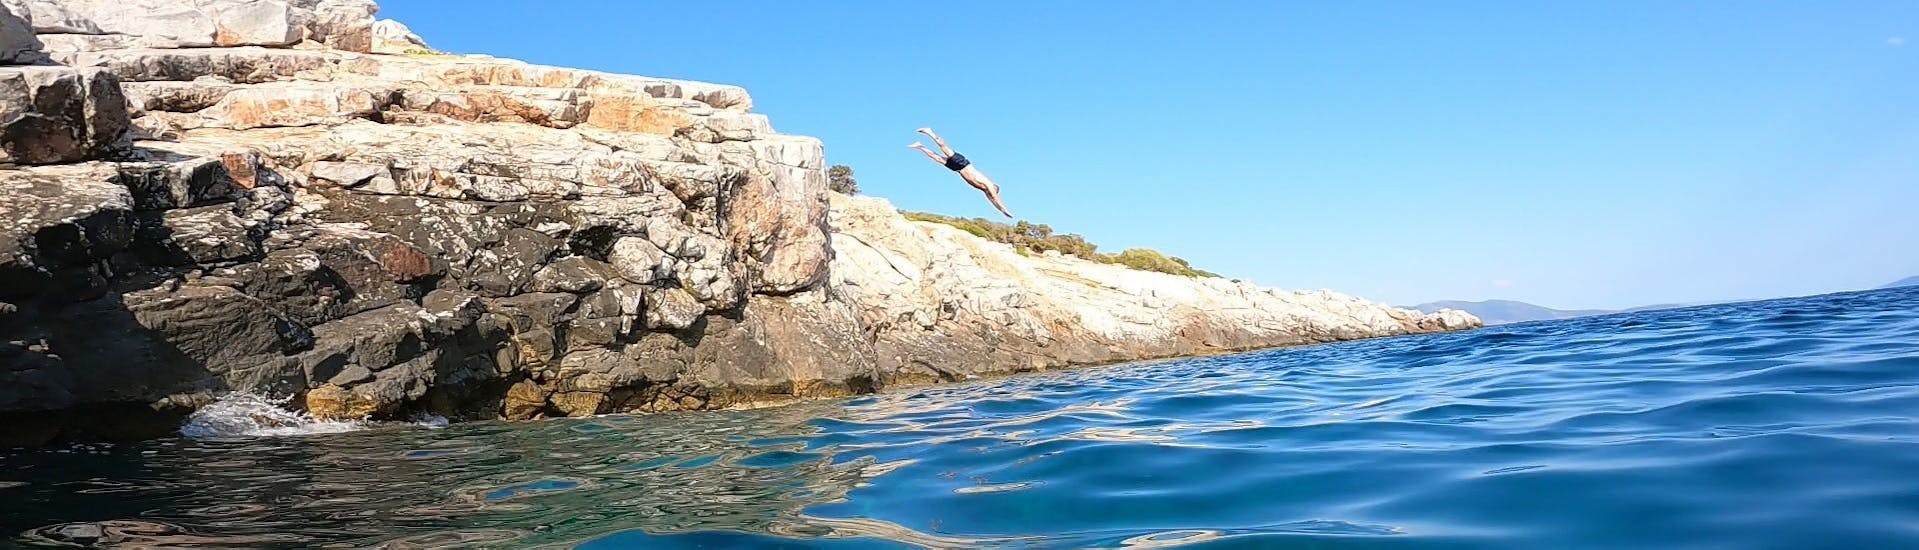 Mann beim Tauchen während einer Bootstour mit Schnorcheln und Klippenspringen in der Nähe von Athen, veranstaltet von Kanelakis Diving Experiences - Dimitris Kanelakis.